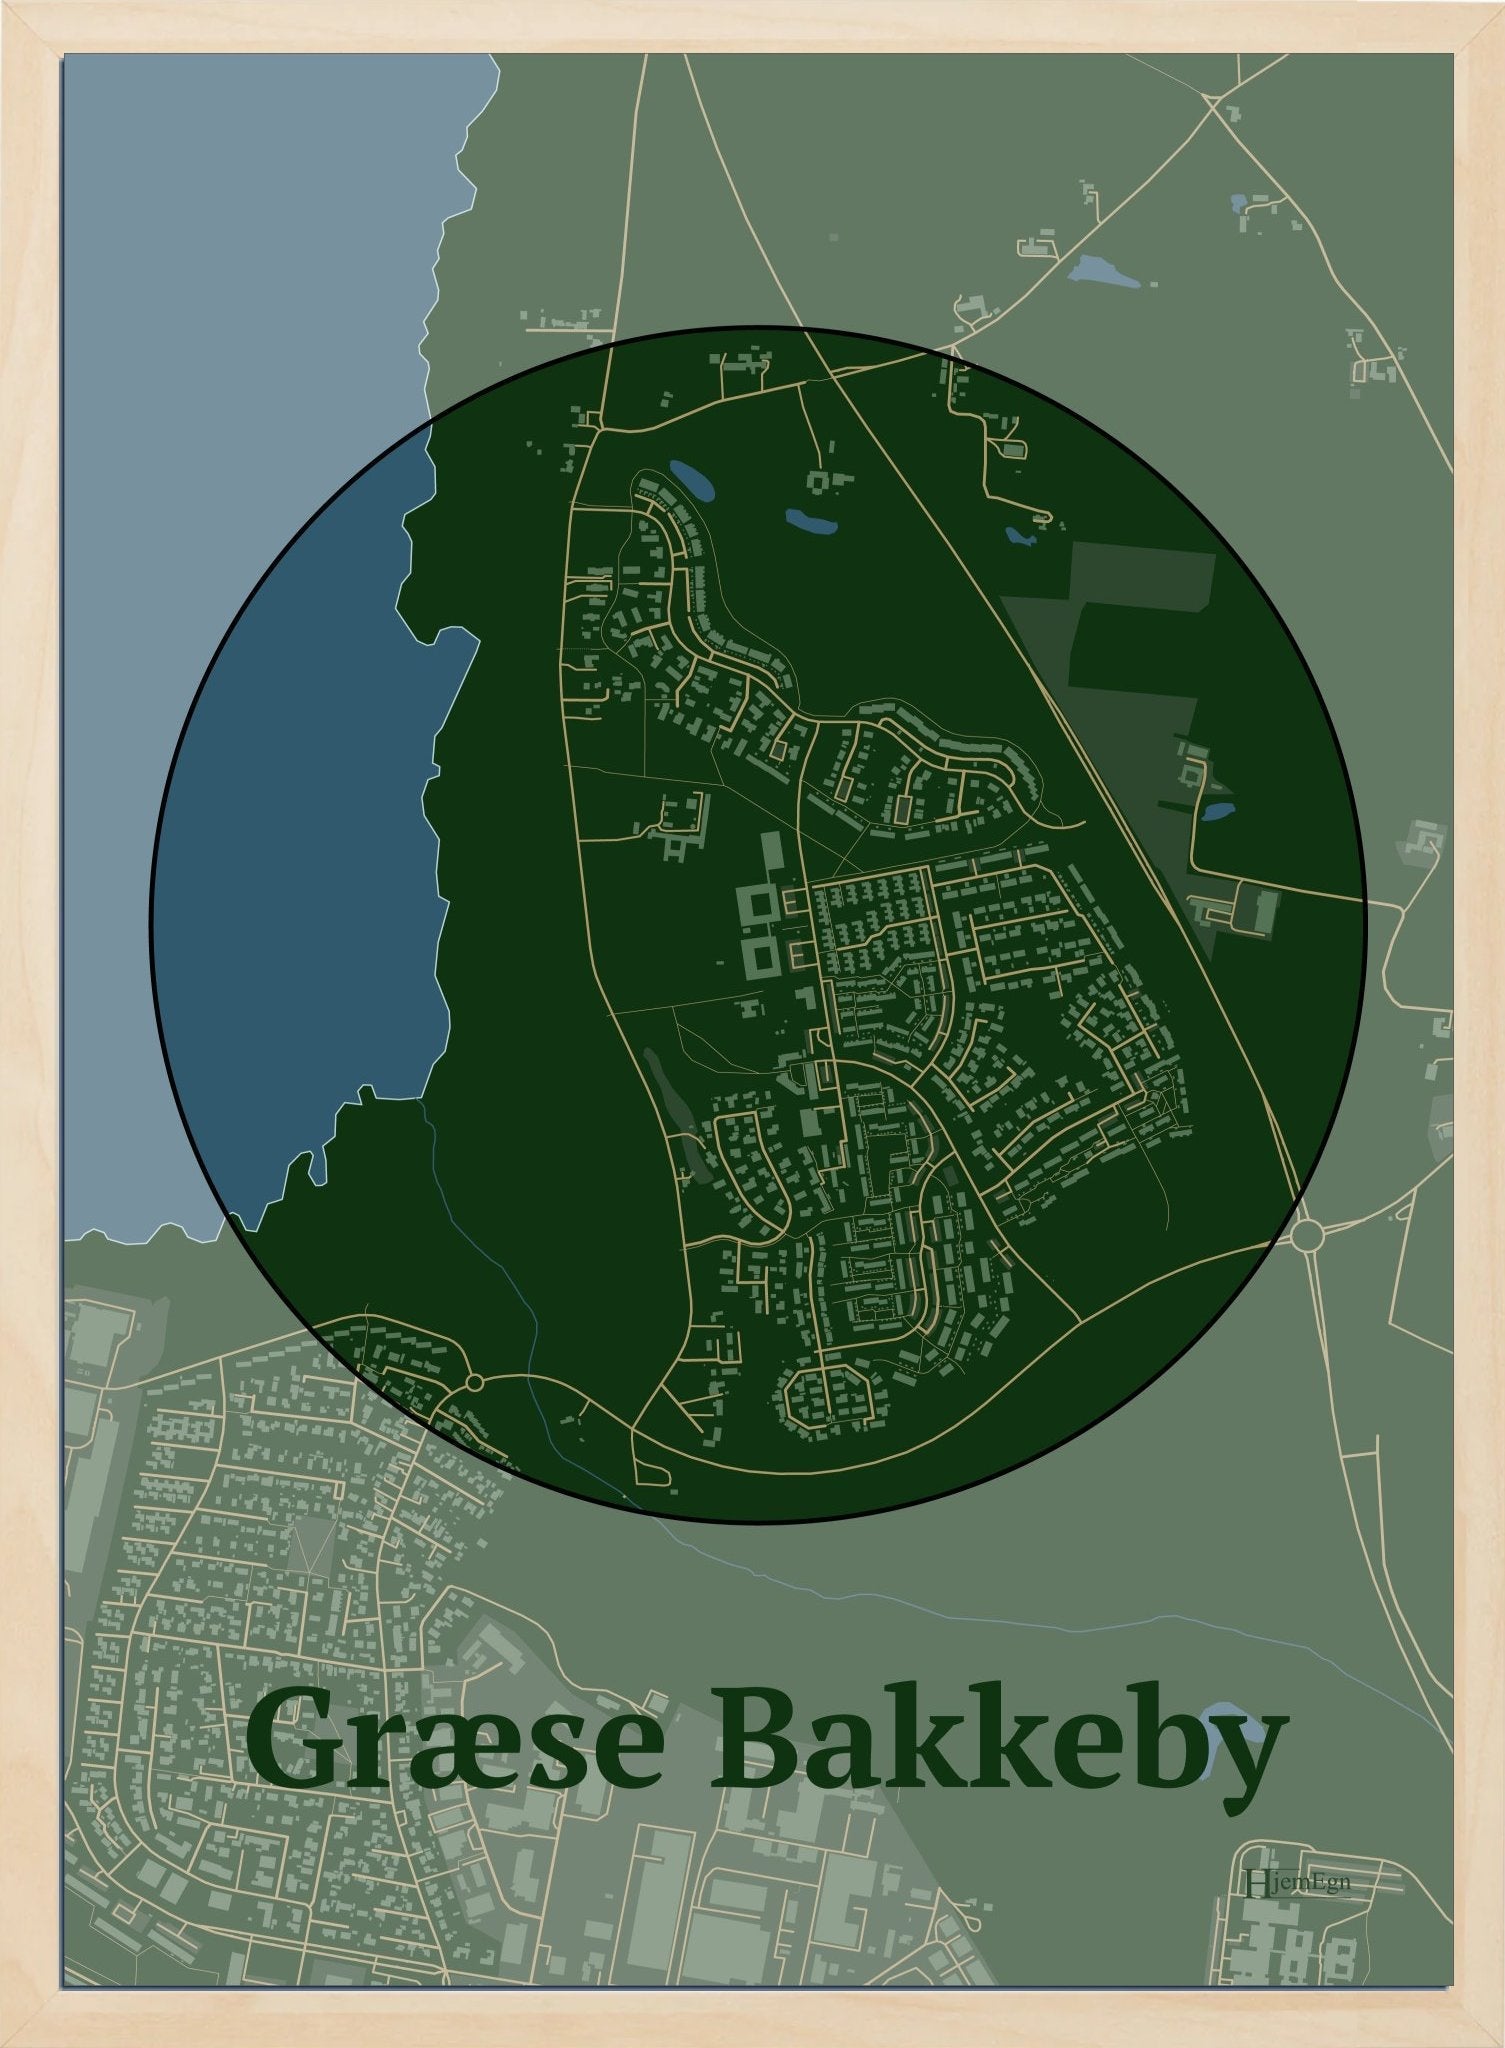 Græse Bakkeby plakat i farve mørk grøn og HjemEgn.dk design centrum. Design bykort for Græse Bakkeby